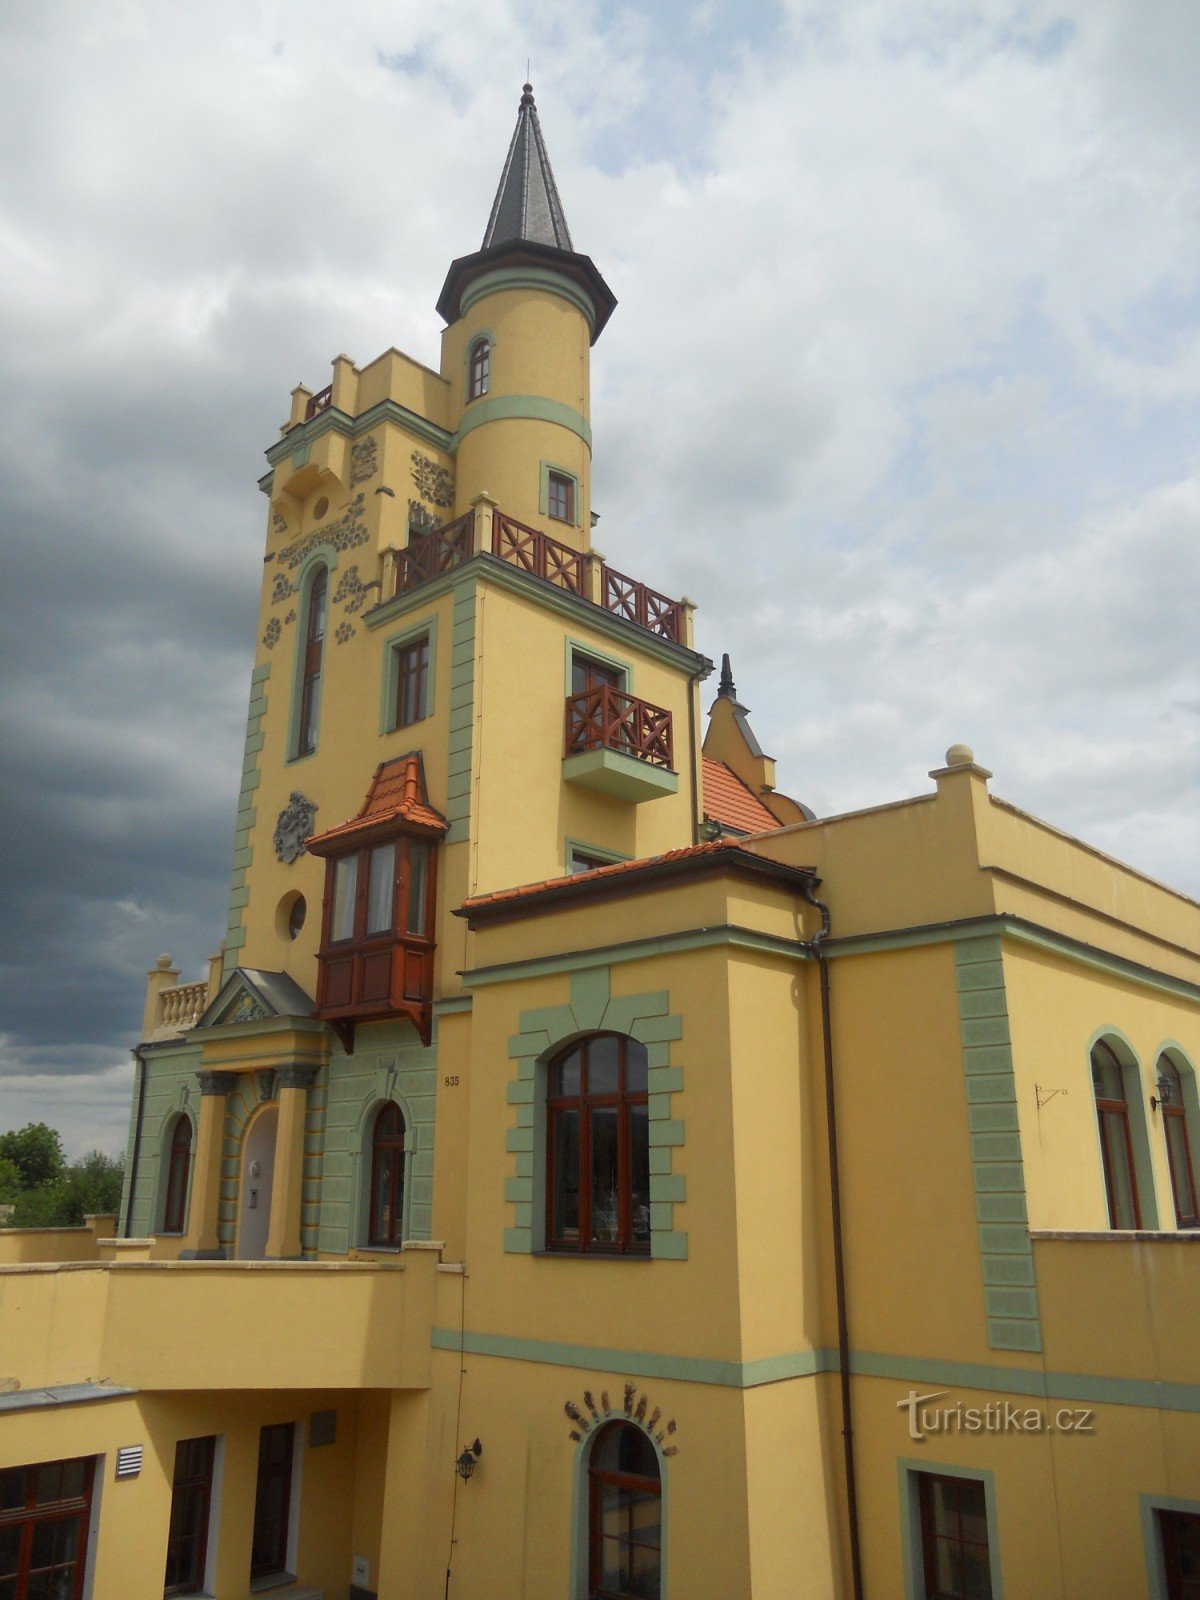 Uitkijktoren Letná in Teplice.